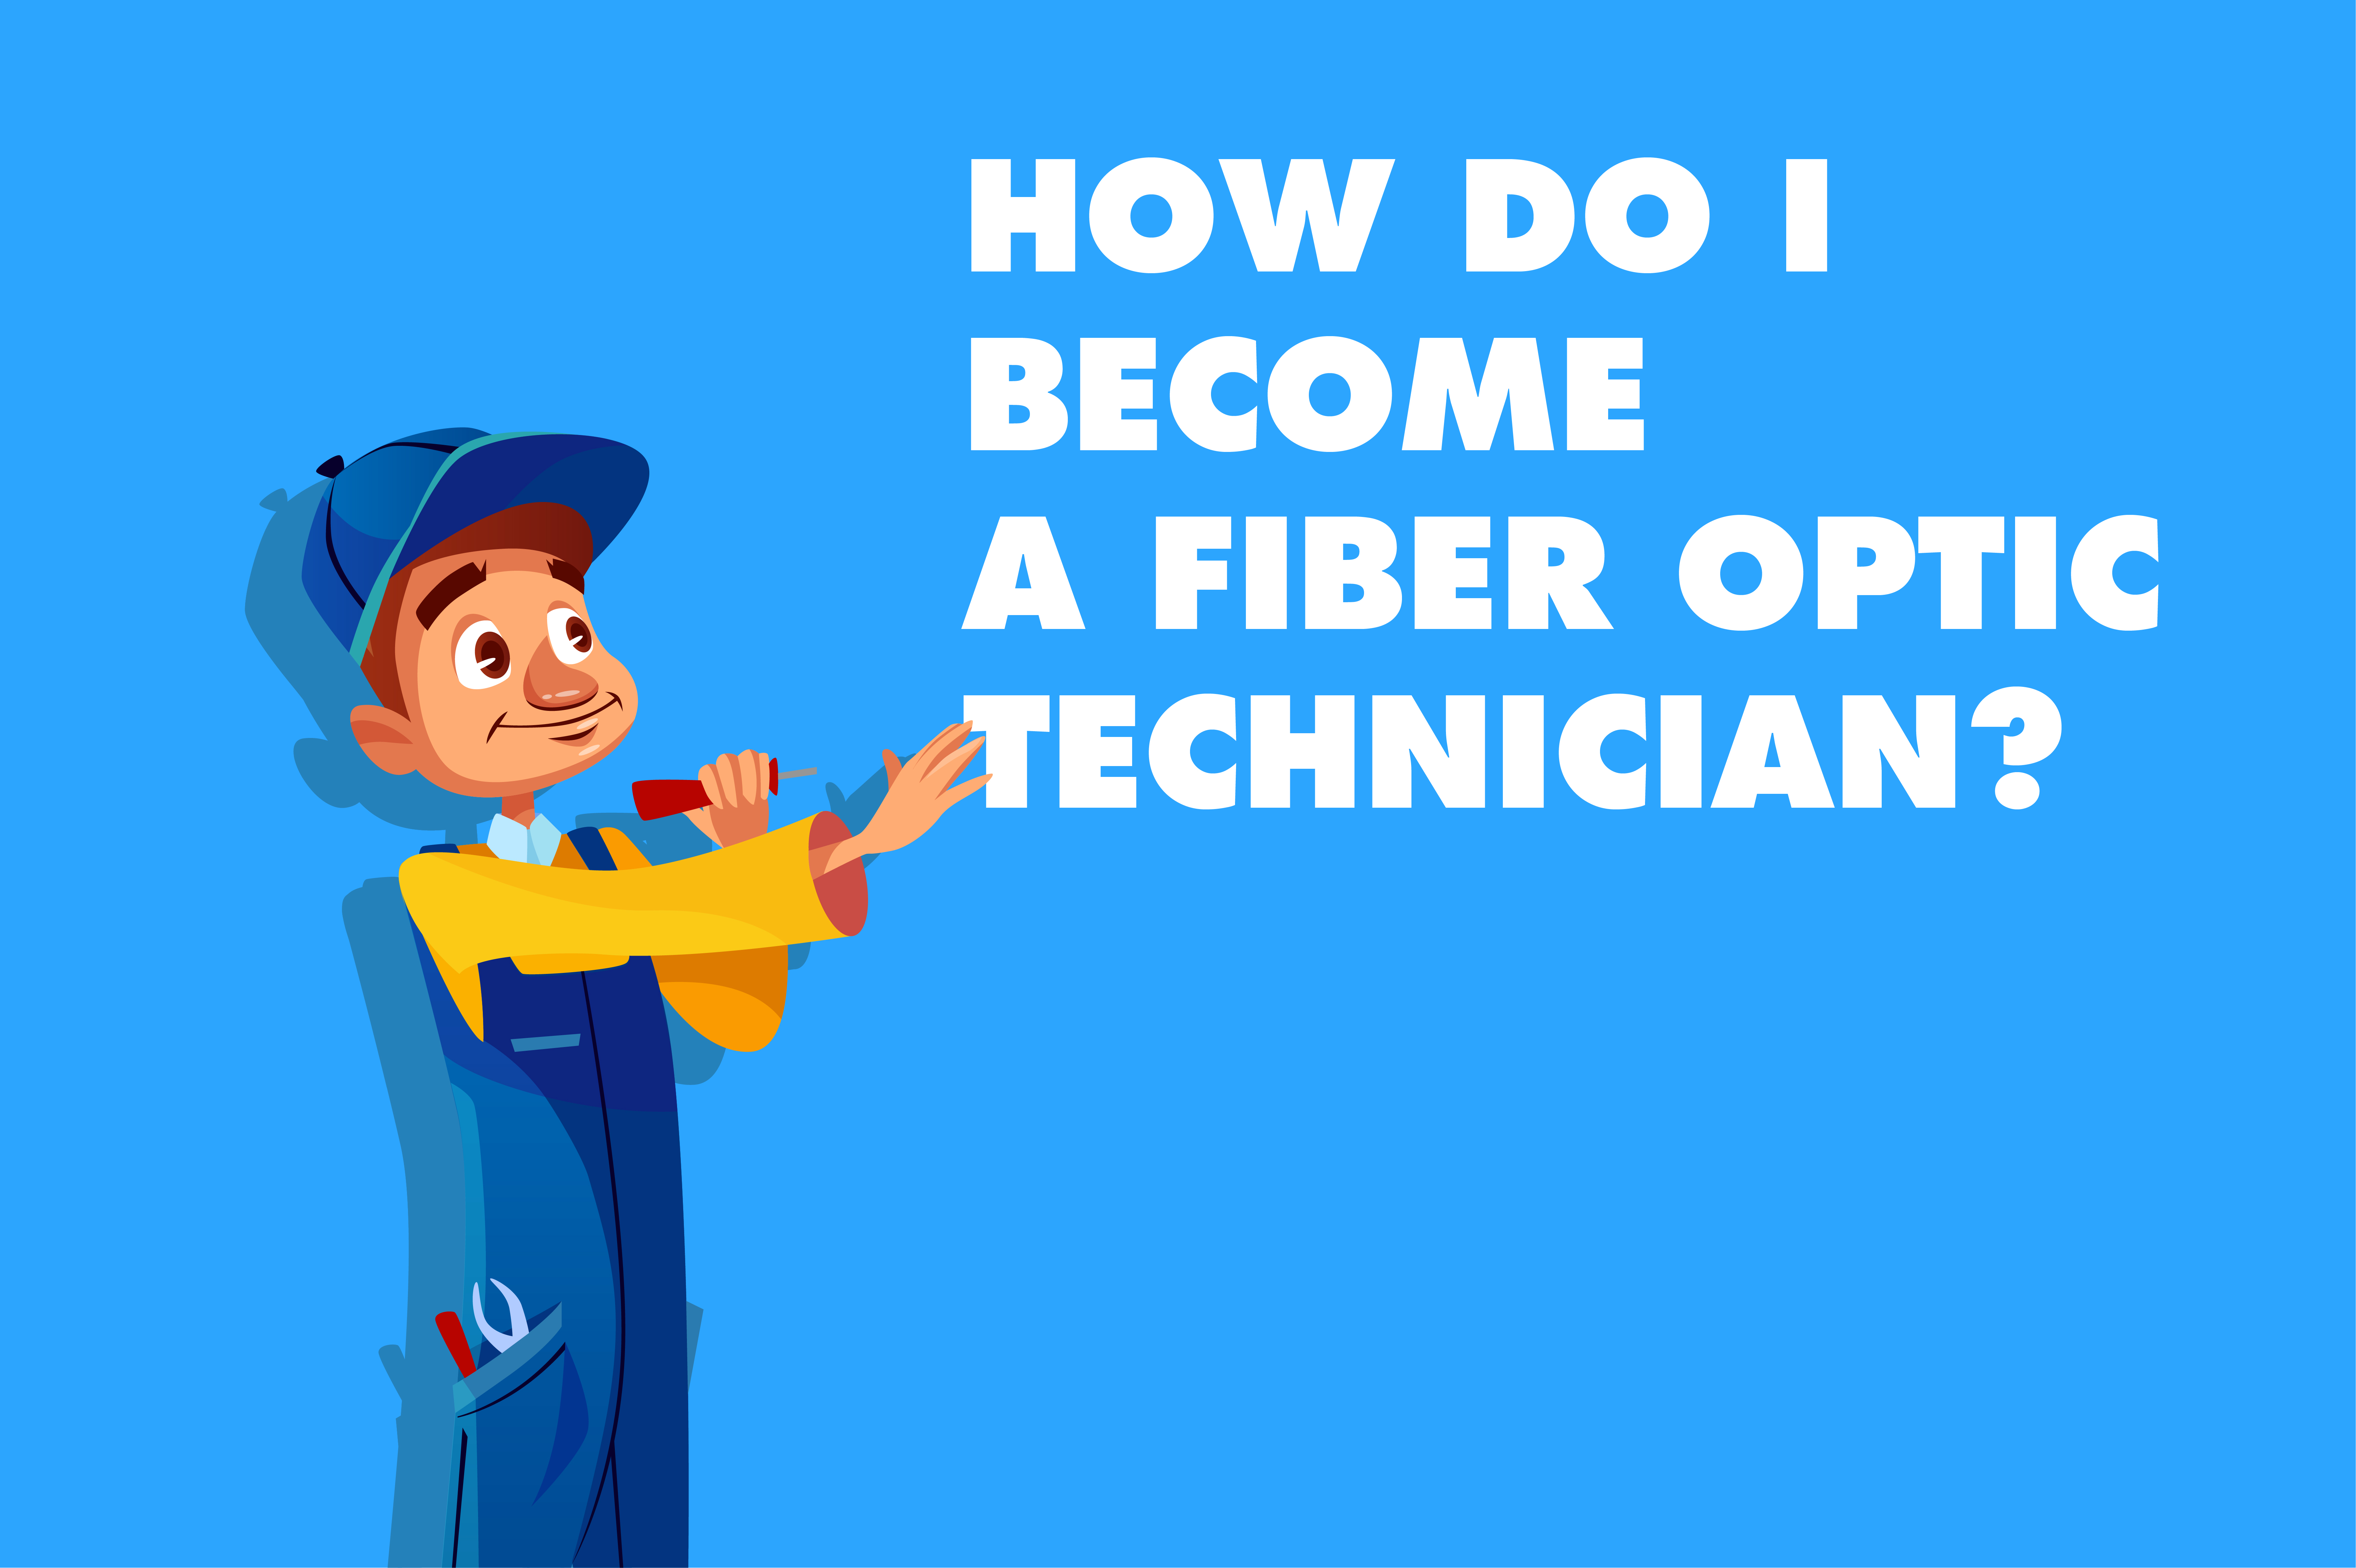 How Do I Become a Fiber Optic Technician?